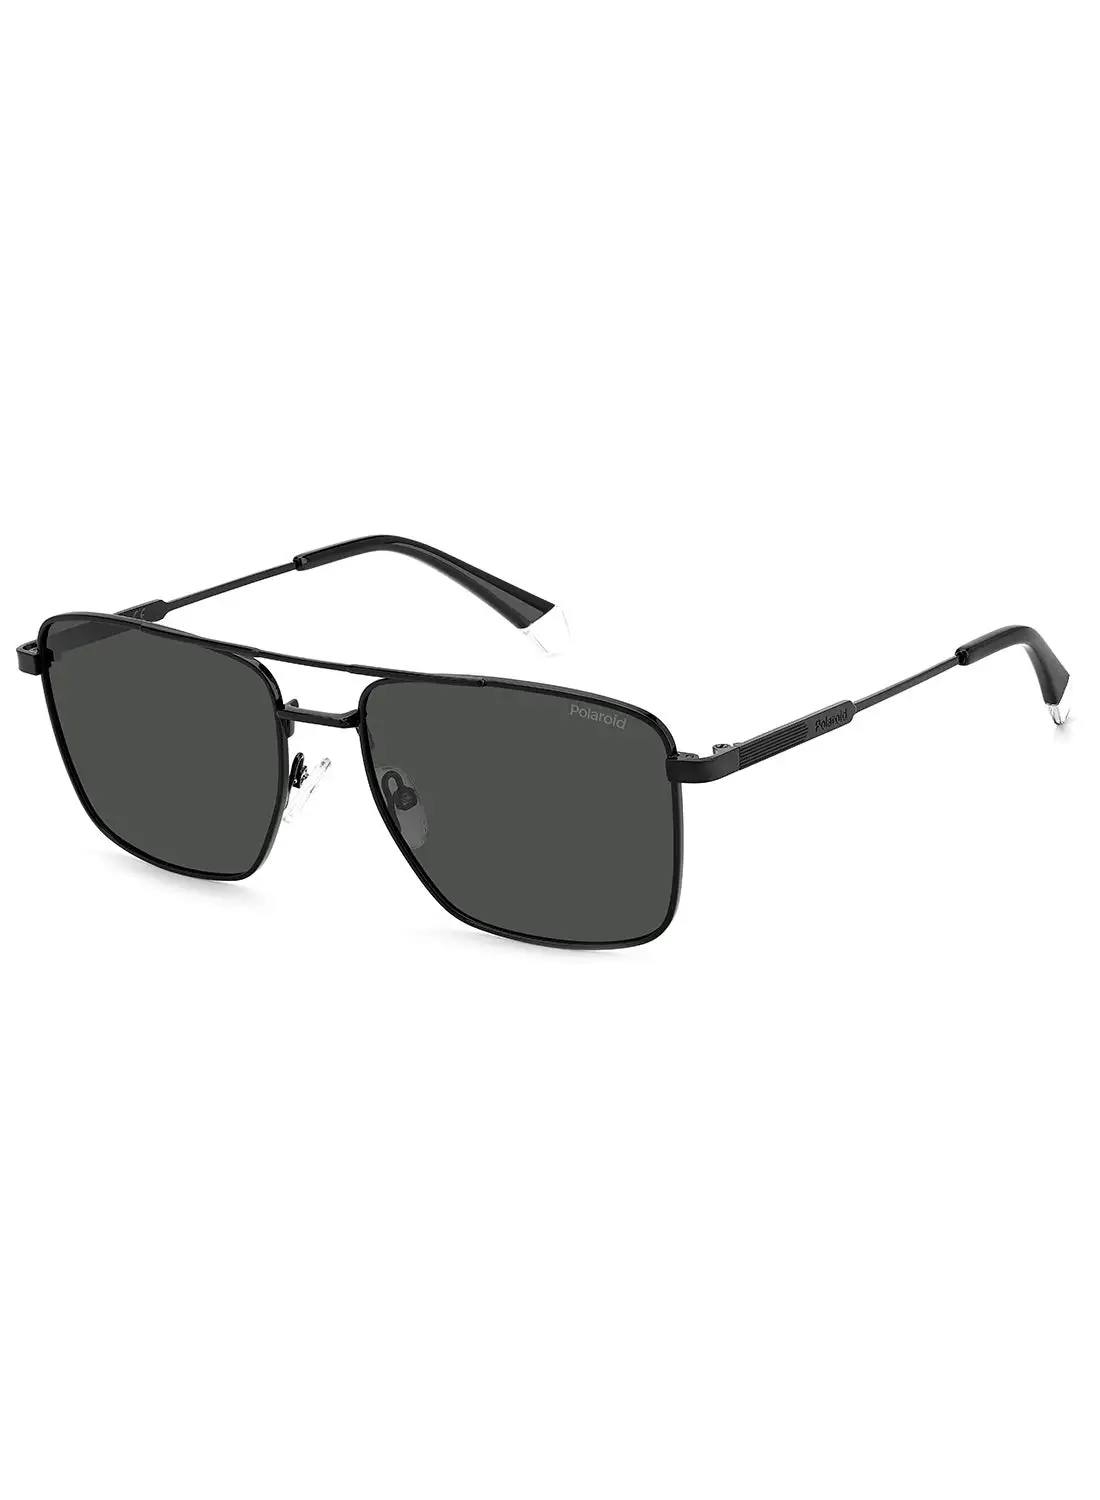 Polaroid Men's Polarized Rectangular Sunglasses - Pld 4134/S/X Black Millimeter - Lens Size: 57 Mm